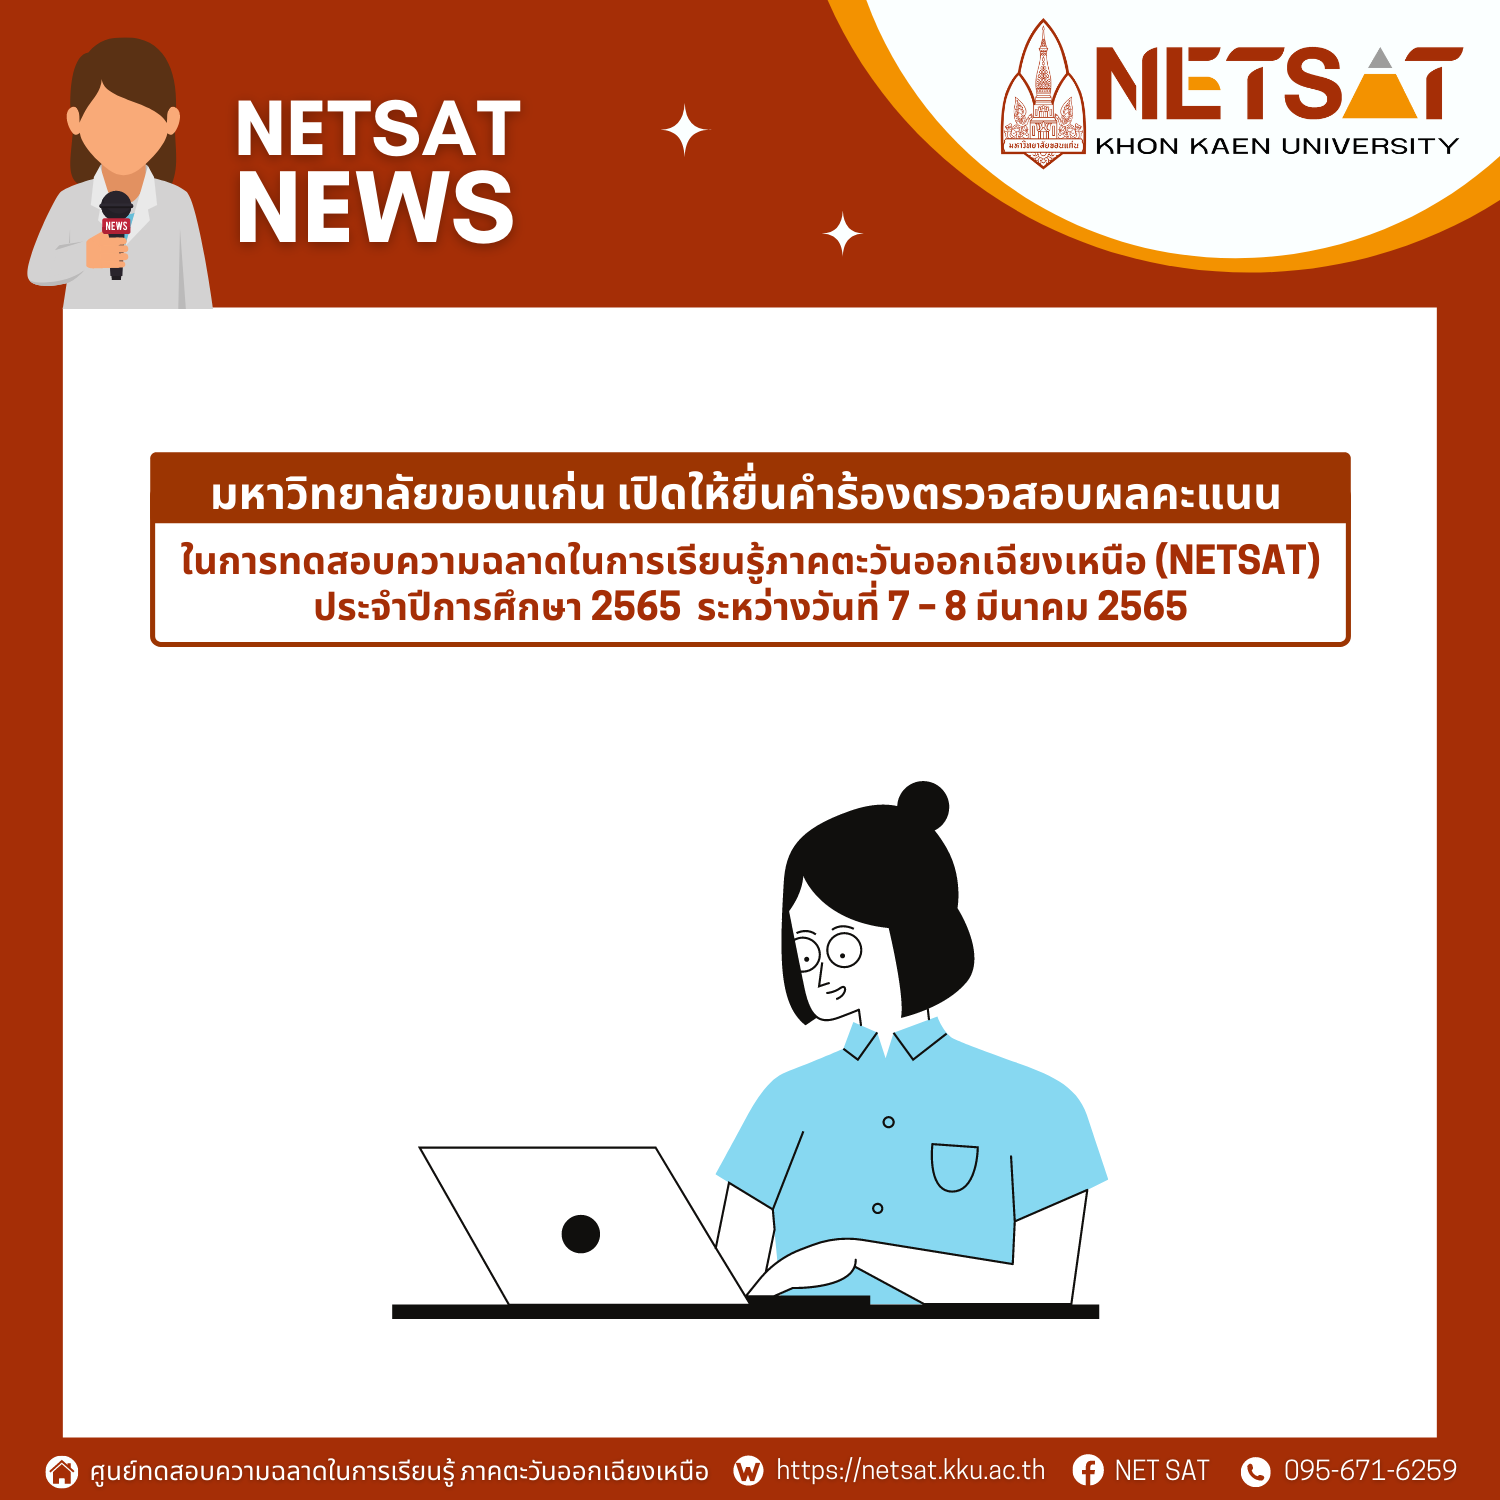 มหาวิทยาลัยขอนแก่น เปิดให้ยื่นคำร้องตรวจสอบผลคะแนน NETSAT ระหว่างวันที่ 7 – 8 มีนาคม 2565